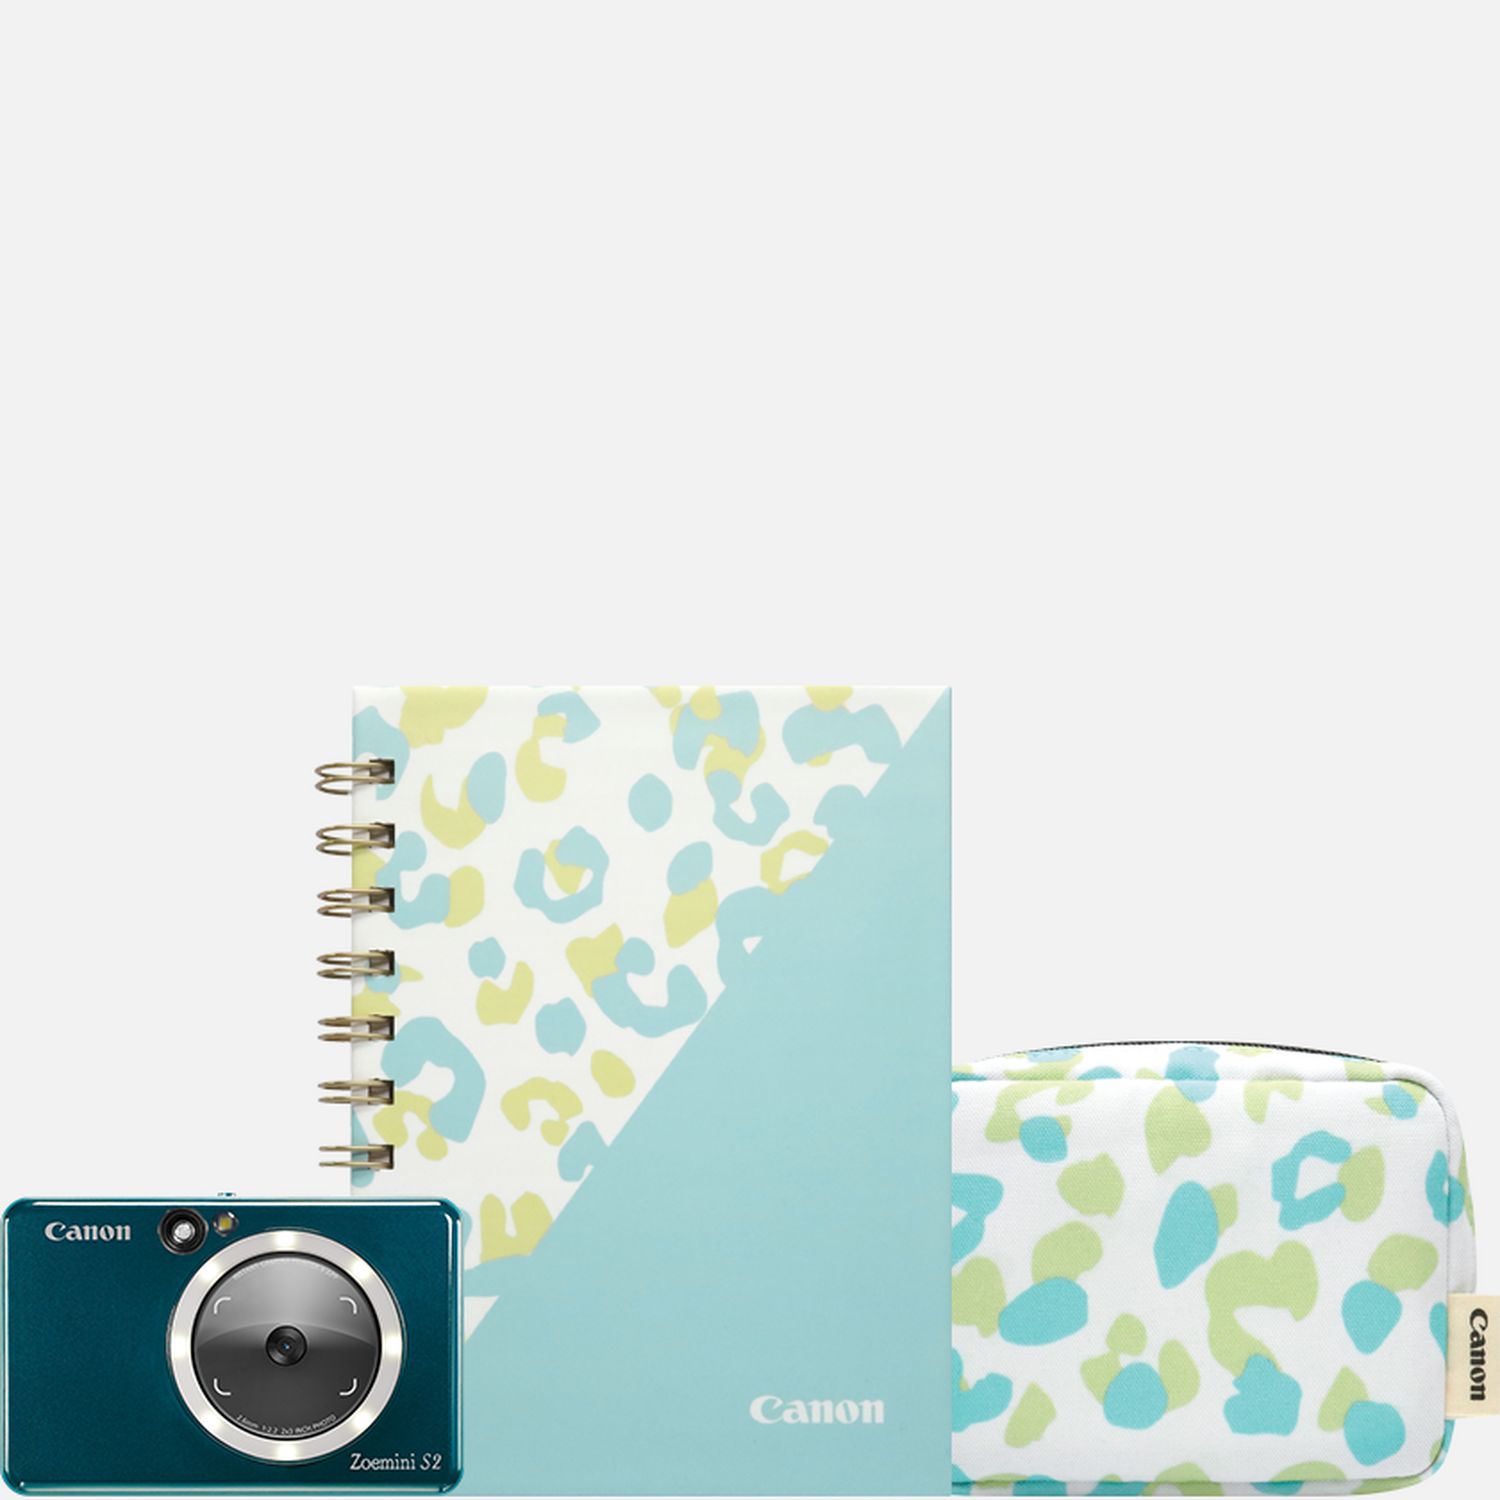 Image of Fotocamera istantanea e stampante fotografica a colori Canon Zoemini S2 (verde acqua), diario e custodia